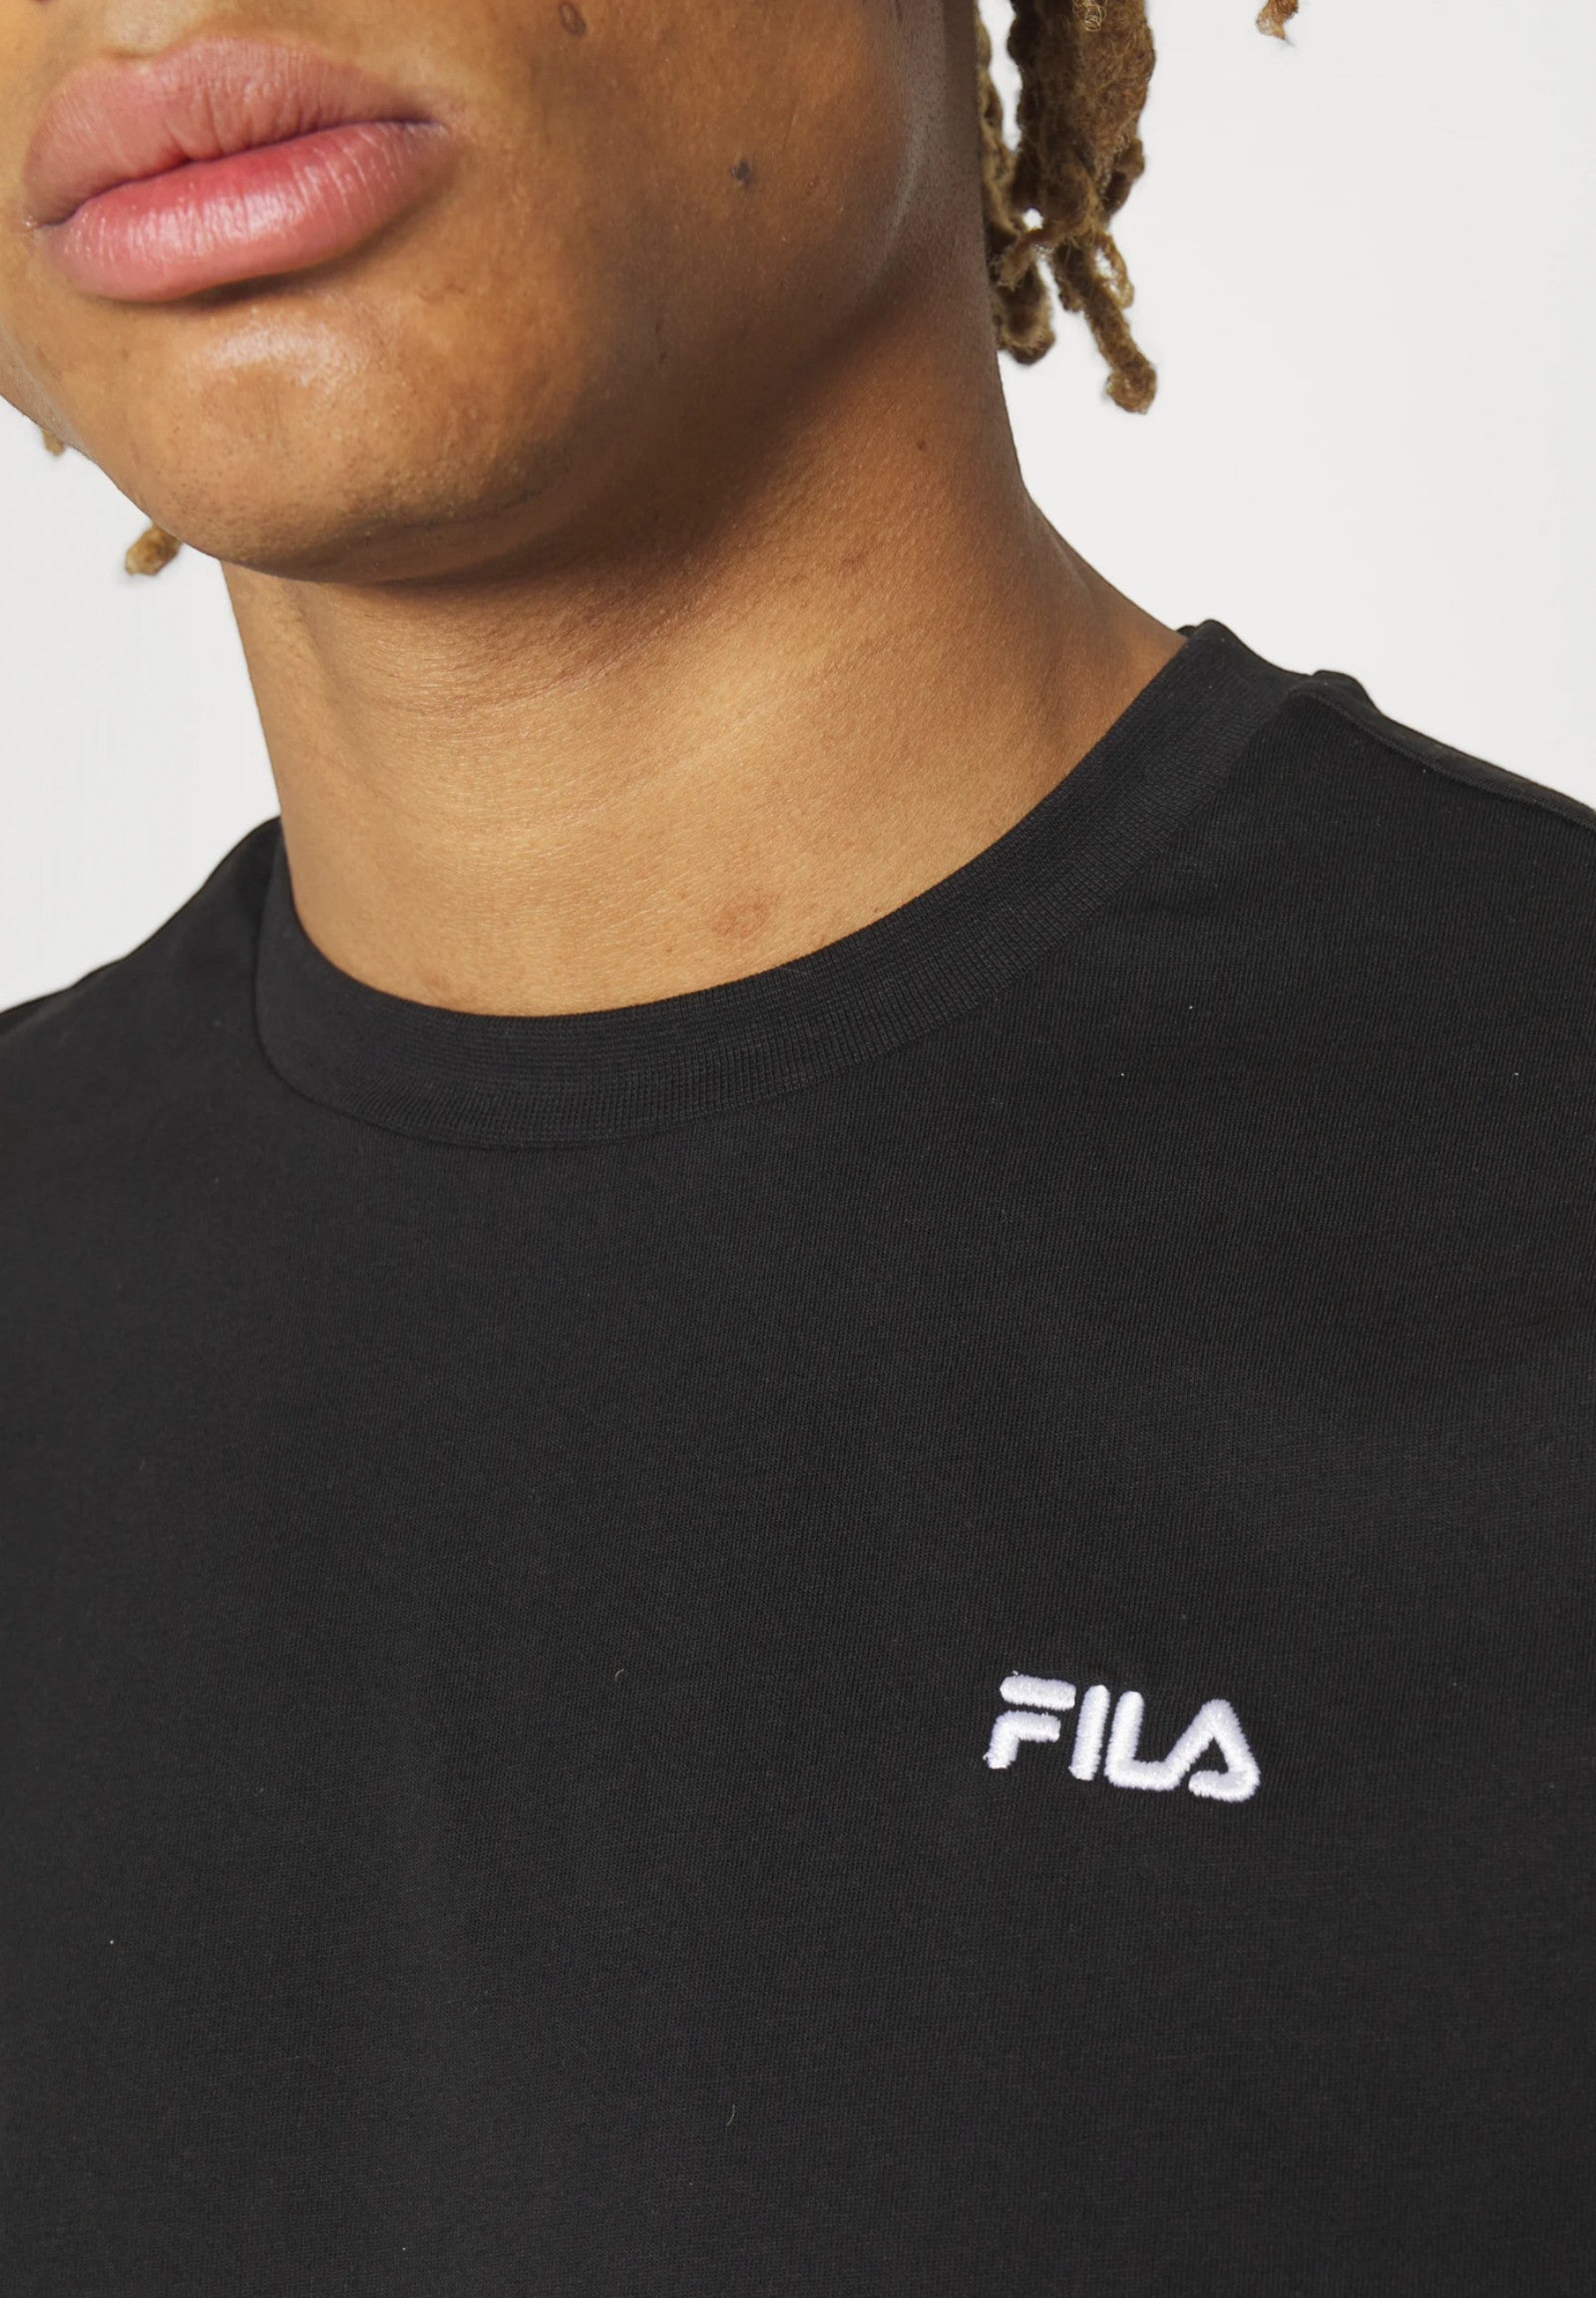 Fila T-Shirt* Fam0340 Black